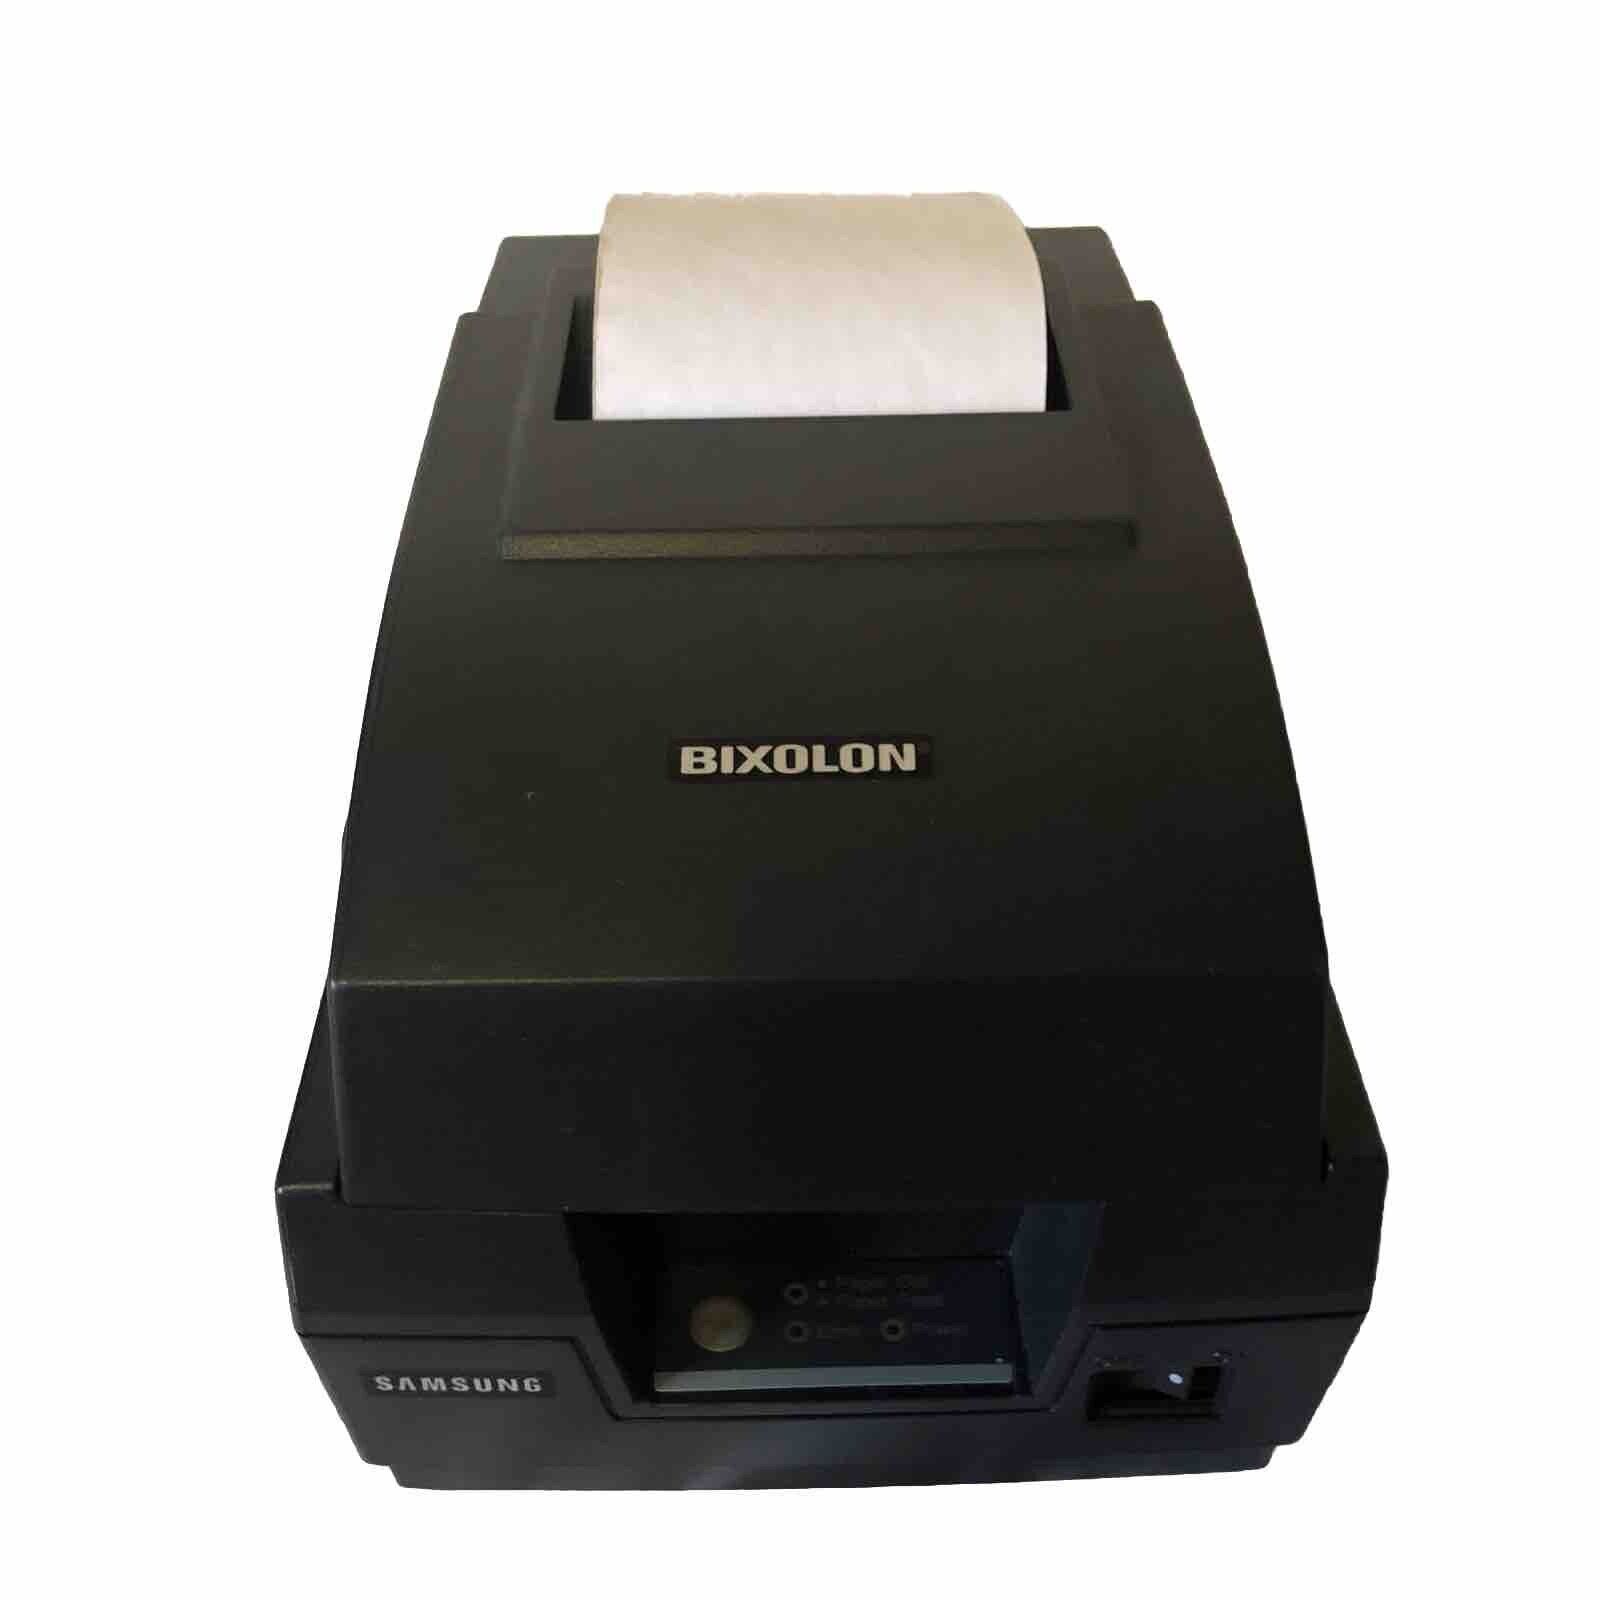 Bixolon Samsung Receipt Printer SRP270 CG TESTED WORKING